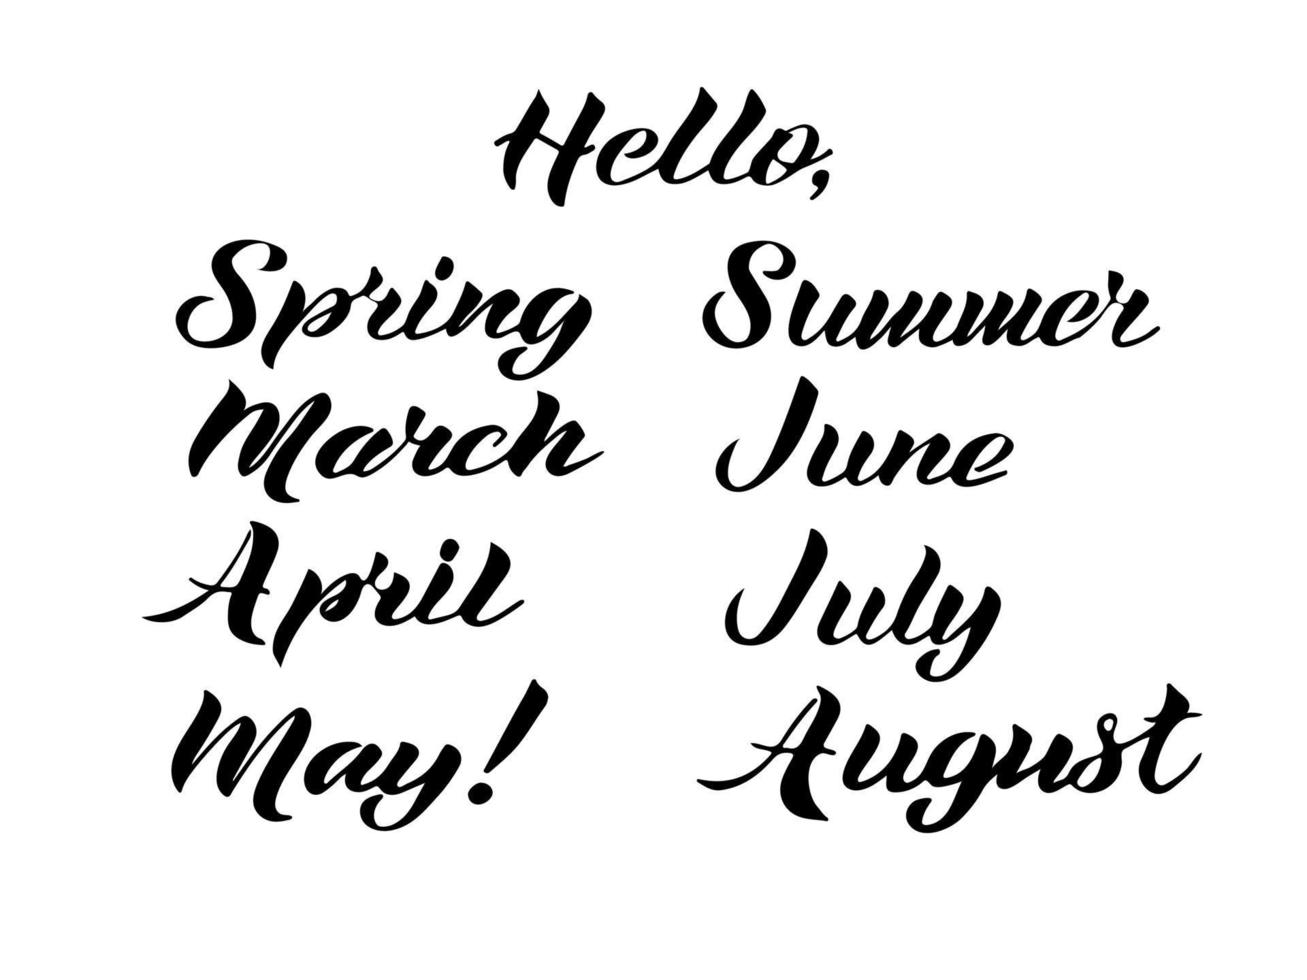 Vector illustration. Set of Spring, Sammer, March, April, May, June, July, August lettering.